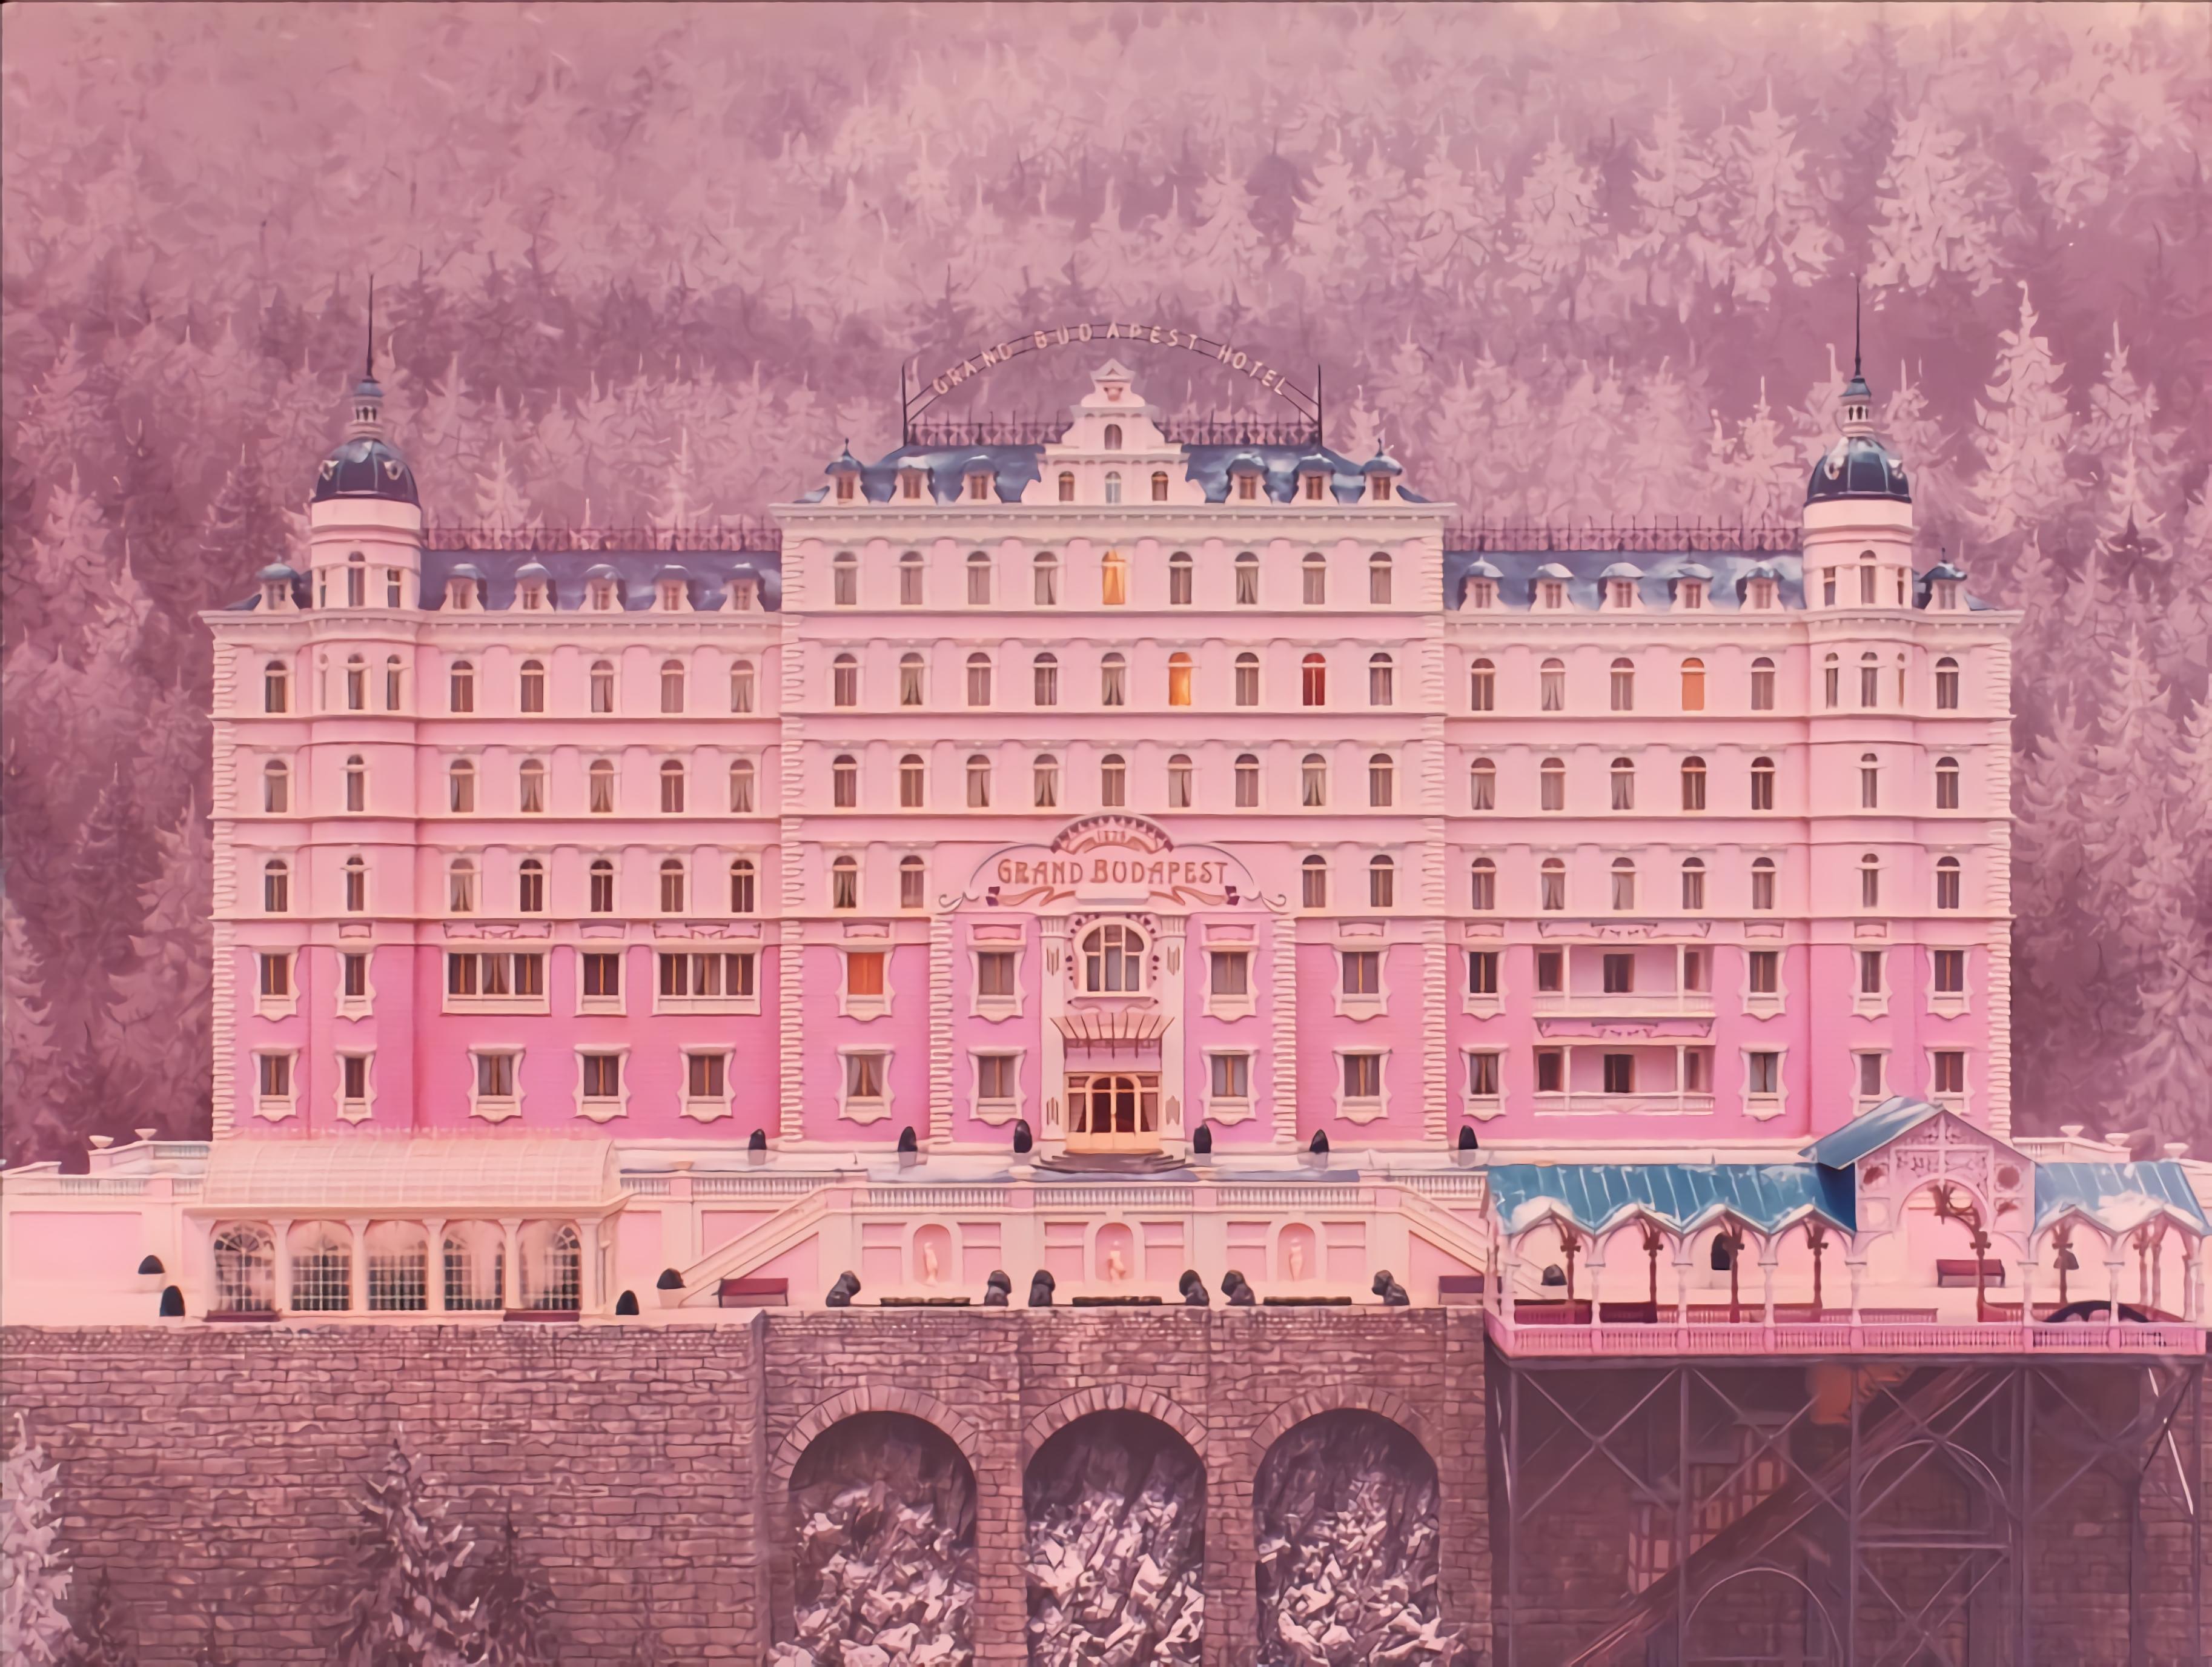 Meilleurs fonds d'écran The Grand Budapest Hotel pour l'écran du téléphone